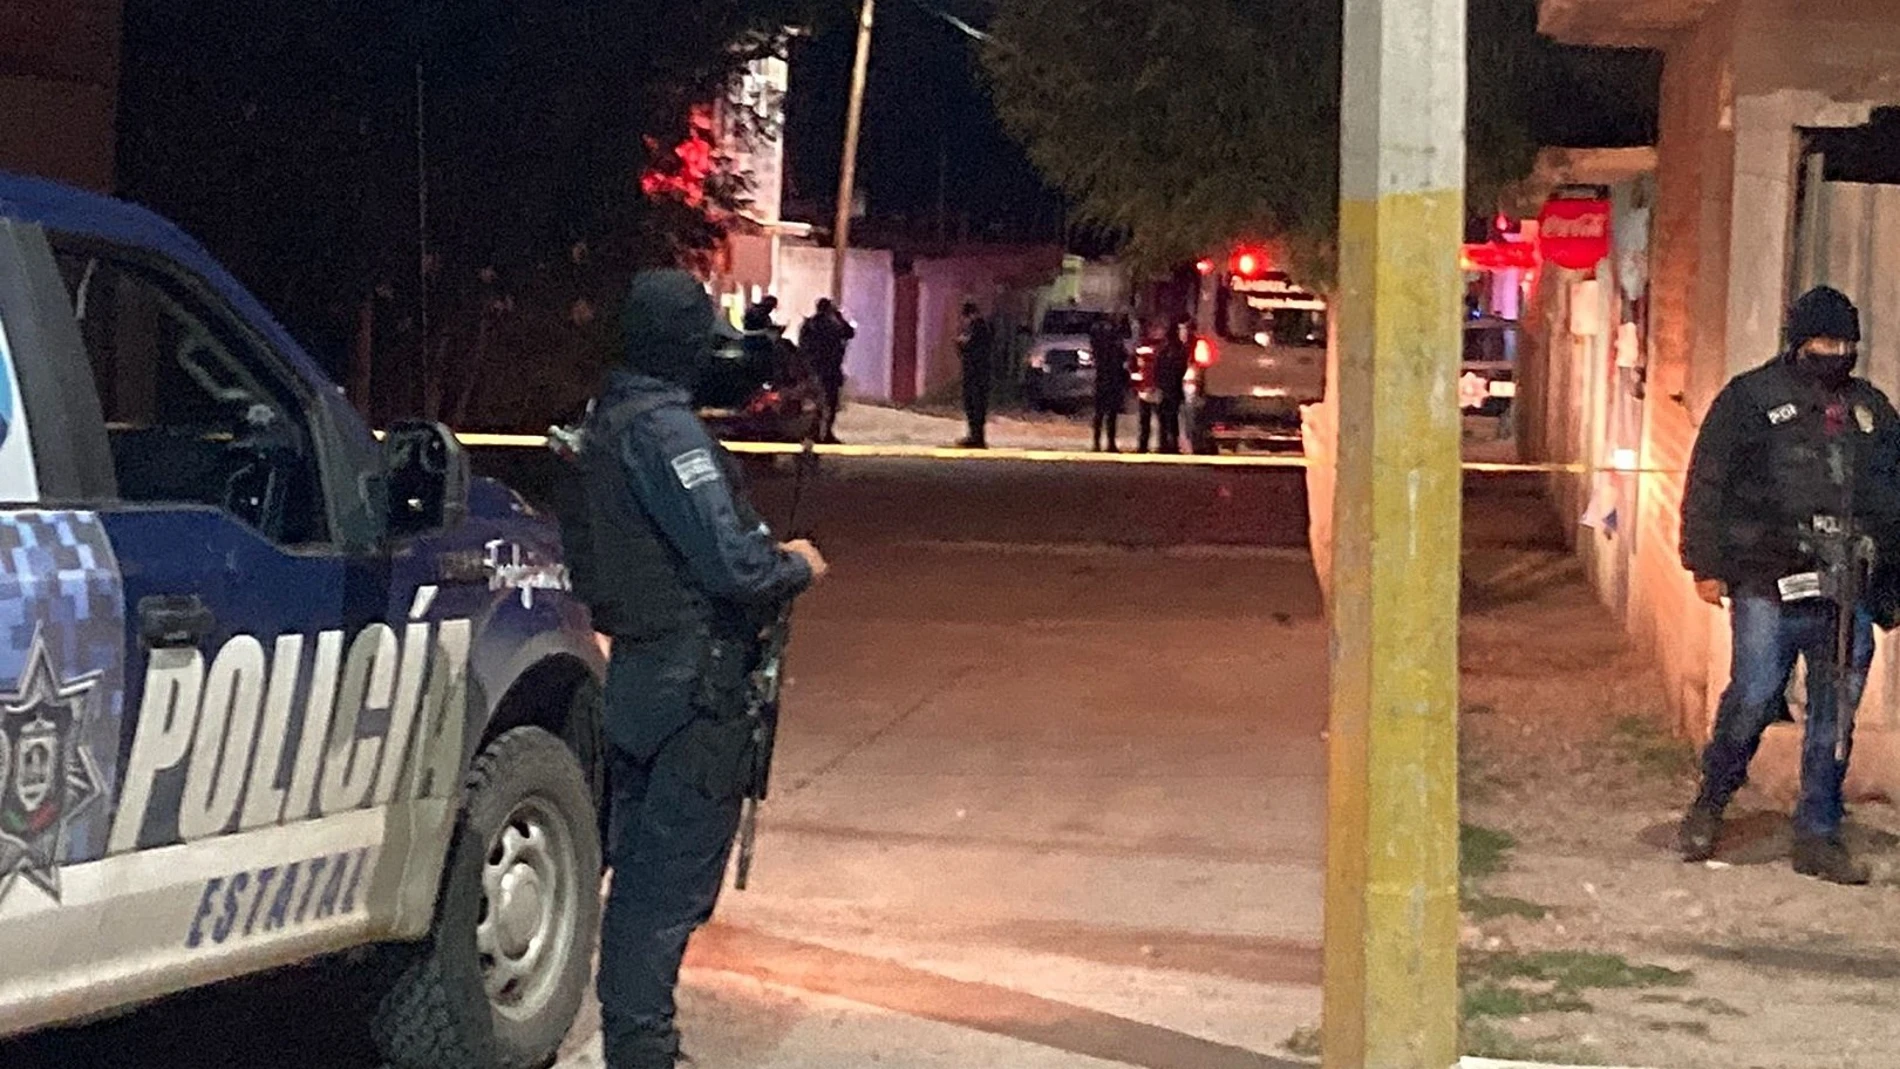 MEX5393. FRESNILLO (MÉXICO), 23/06/2021.- Fotografía cedida hoy, por el Periódico Imagen de Zacatecas, de miembros de la policía estatal mientras resguardan el área donde un comando armado asesinó a nueve personas en la ciudad de Fresnillo, estado de Zacatecas (México). Nueve personas, entre ellas dos policías, fueron asesinadas en dos hechos distintos este miércoles en el estado mexicano Zacatecas, centro del país, informó la Secretaría de Seguridad Pública (SSP) de la entidad. EFE/ Periódico Imagen Zacatecas MÁXIMA CALIDAD DISPONIBLE SOLO USO EDITORIAL SOLO DISPONIBLE PARA ILUSTRAR LA NOTICIA QUE ACOMPAÑA (CRÉDITO OBLIGATORIO)